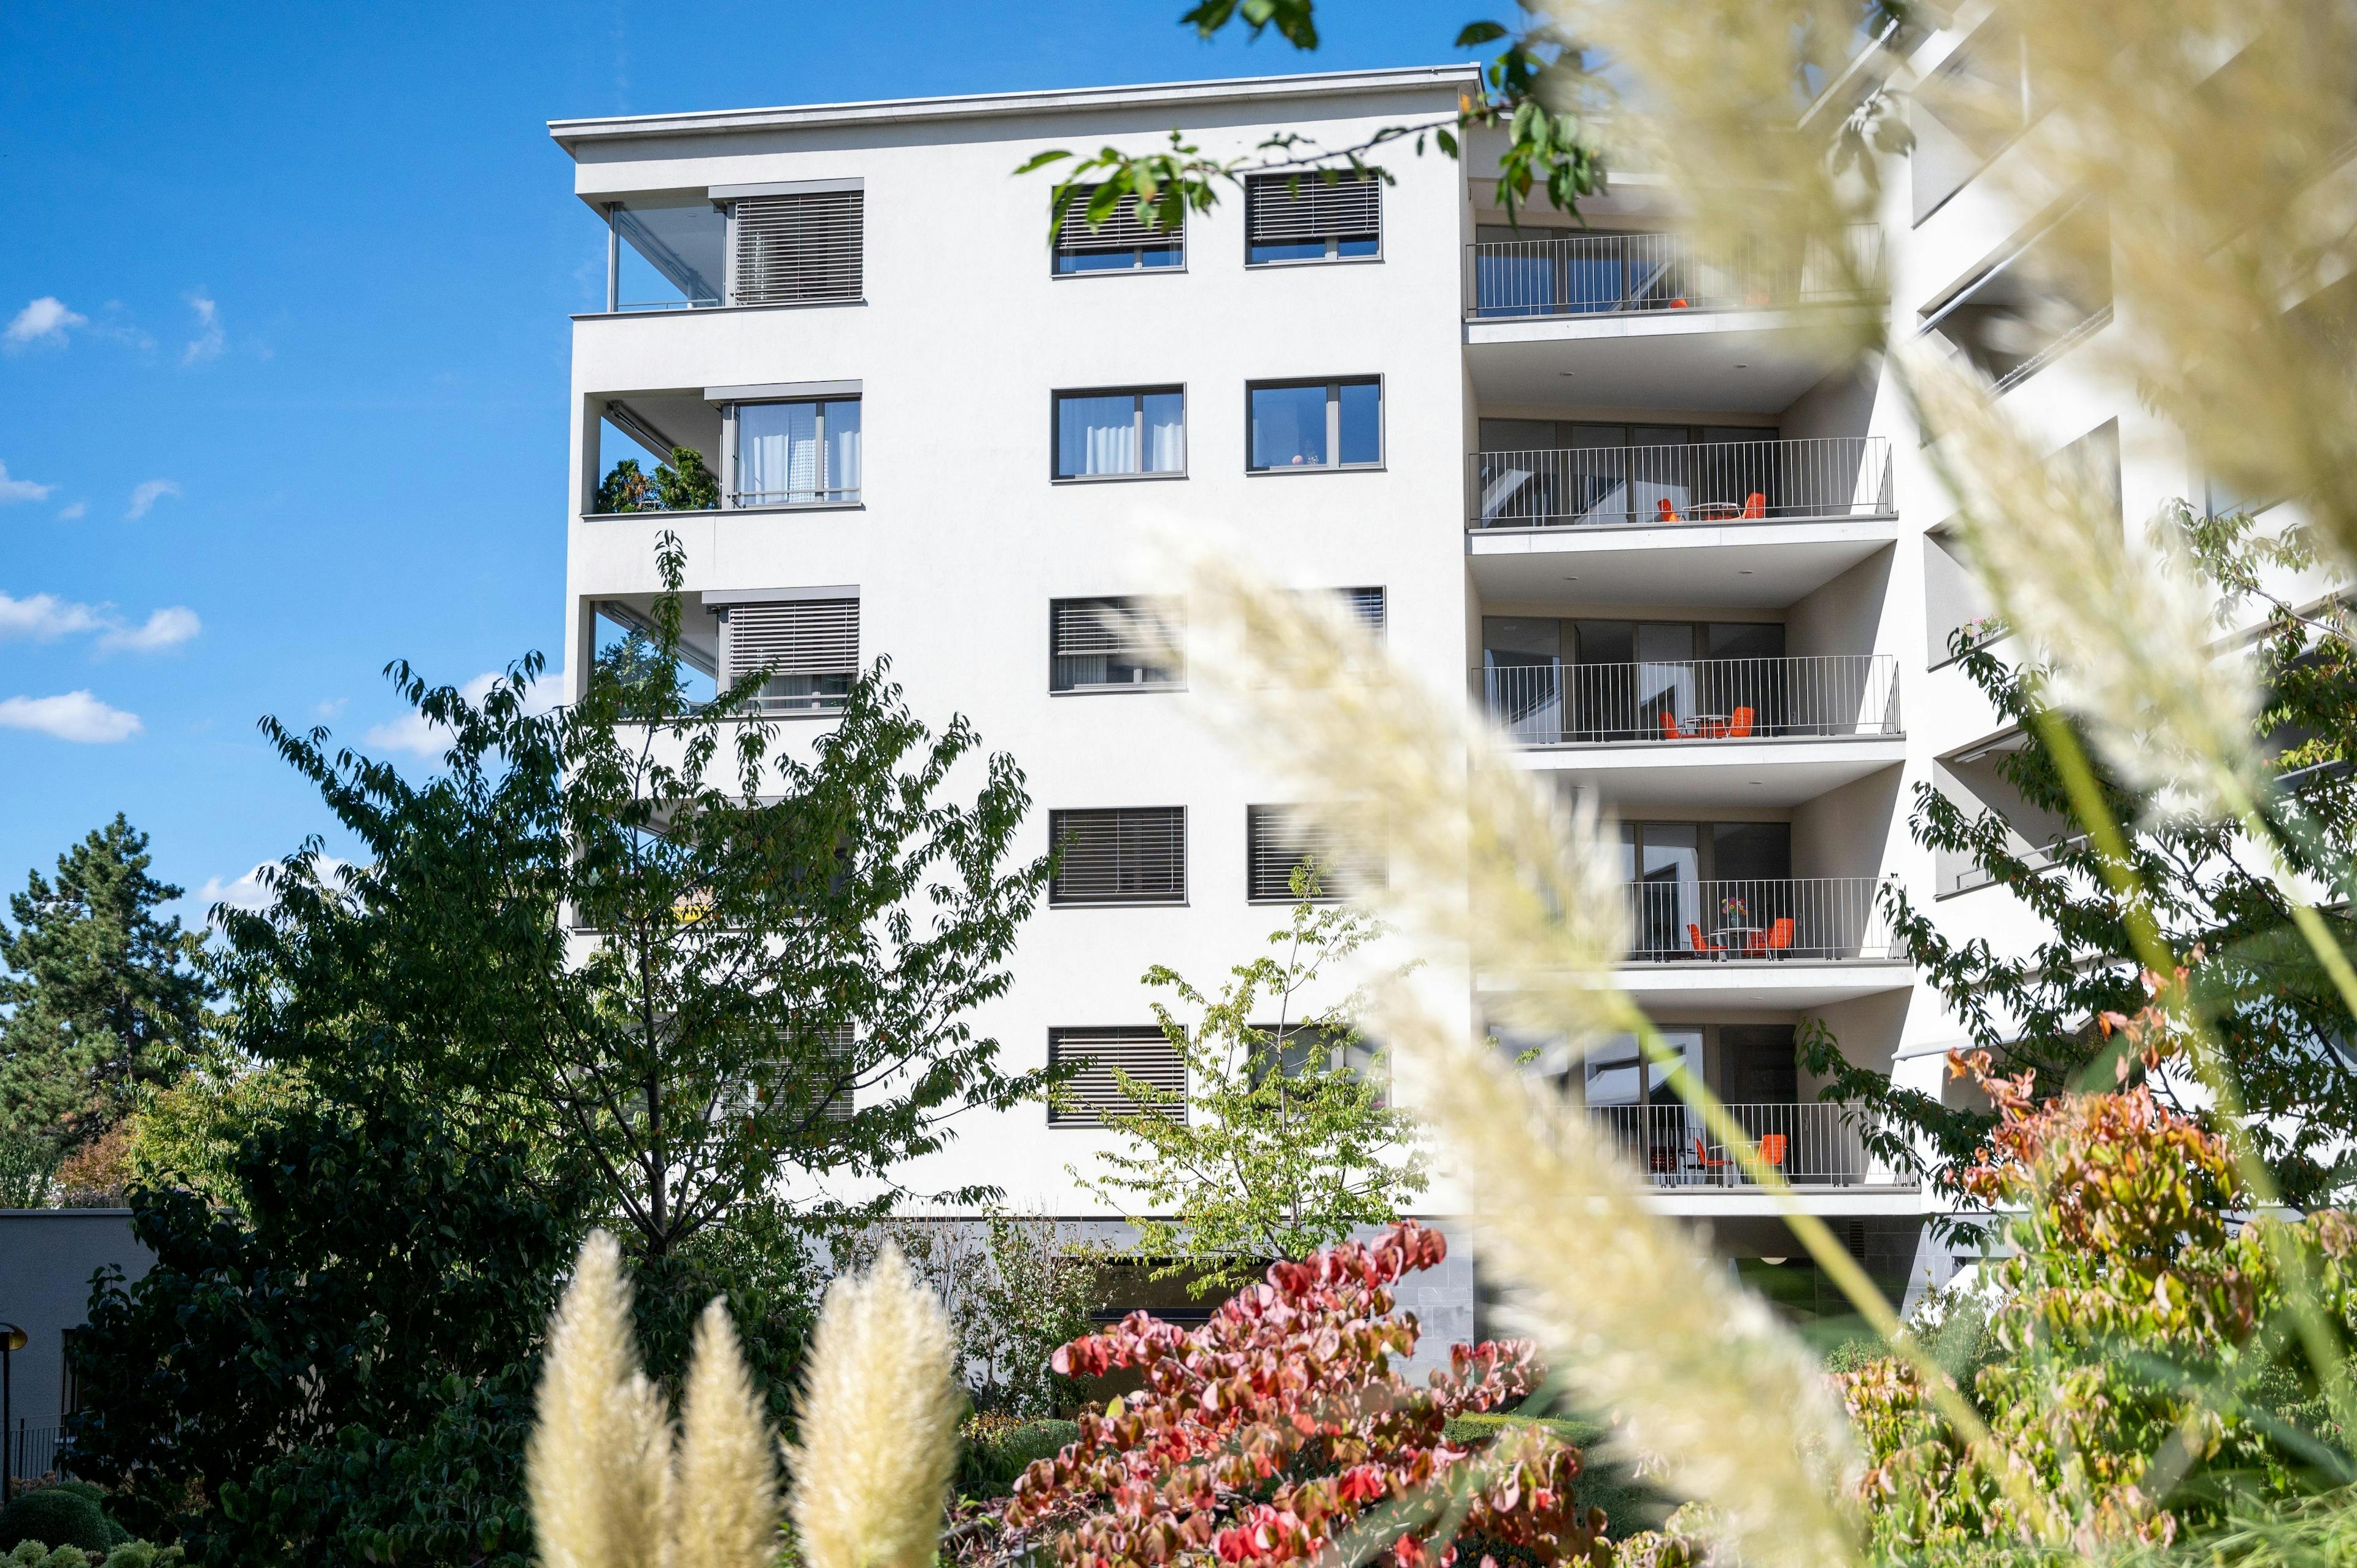 Weißes Mehrfamilienhaus mit Balkonen, umgeben von Grünflächen und Pflanzen im Vordergrund.